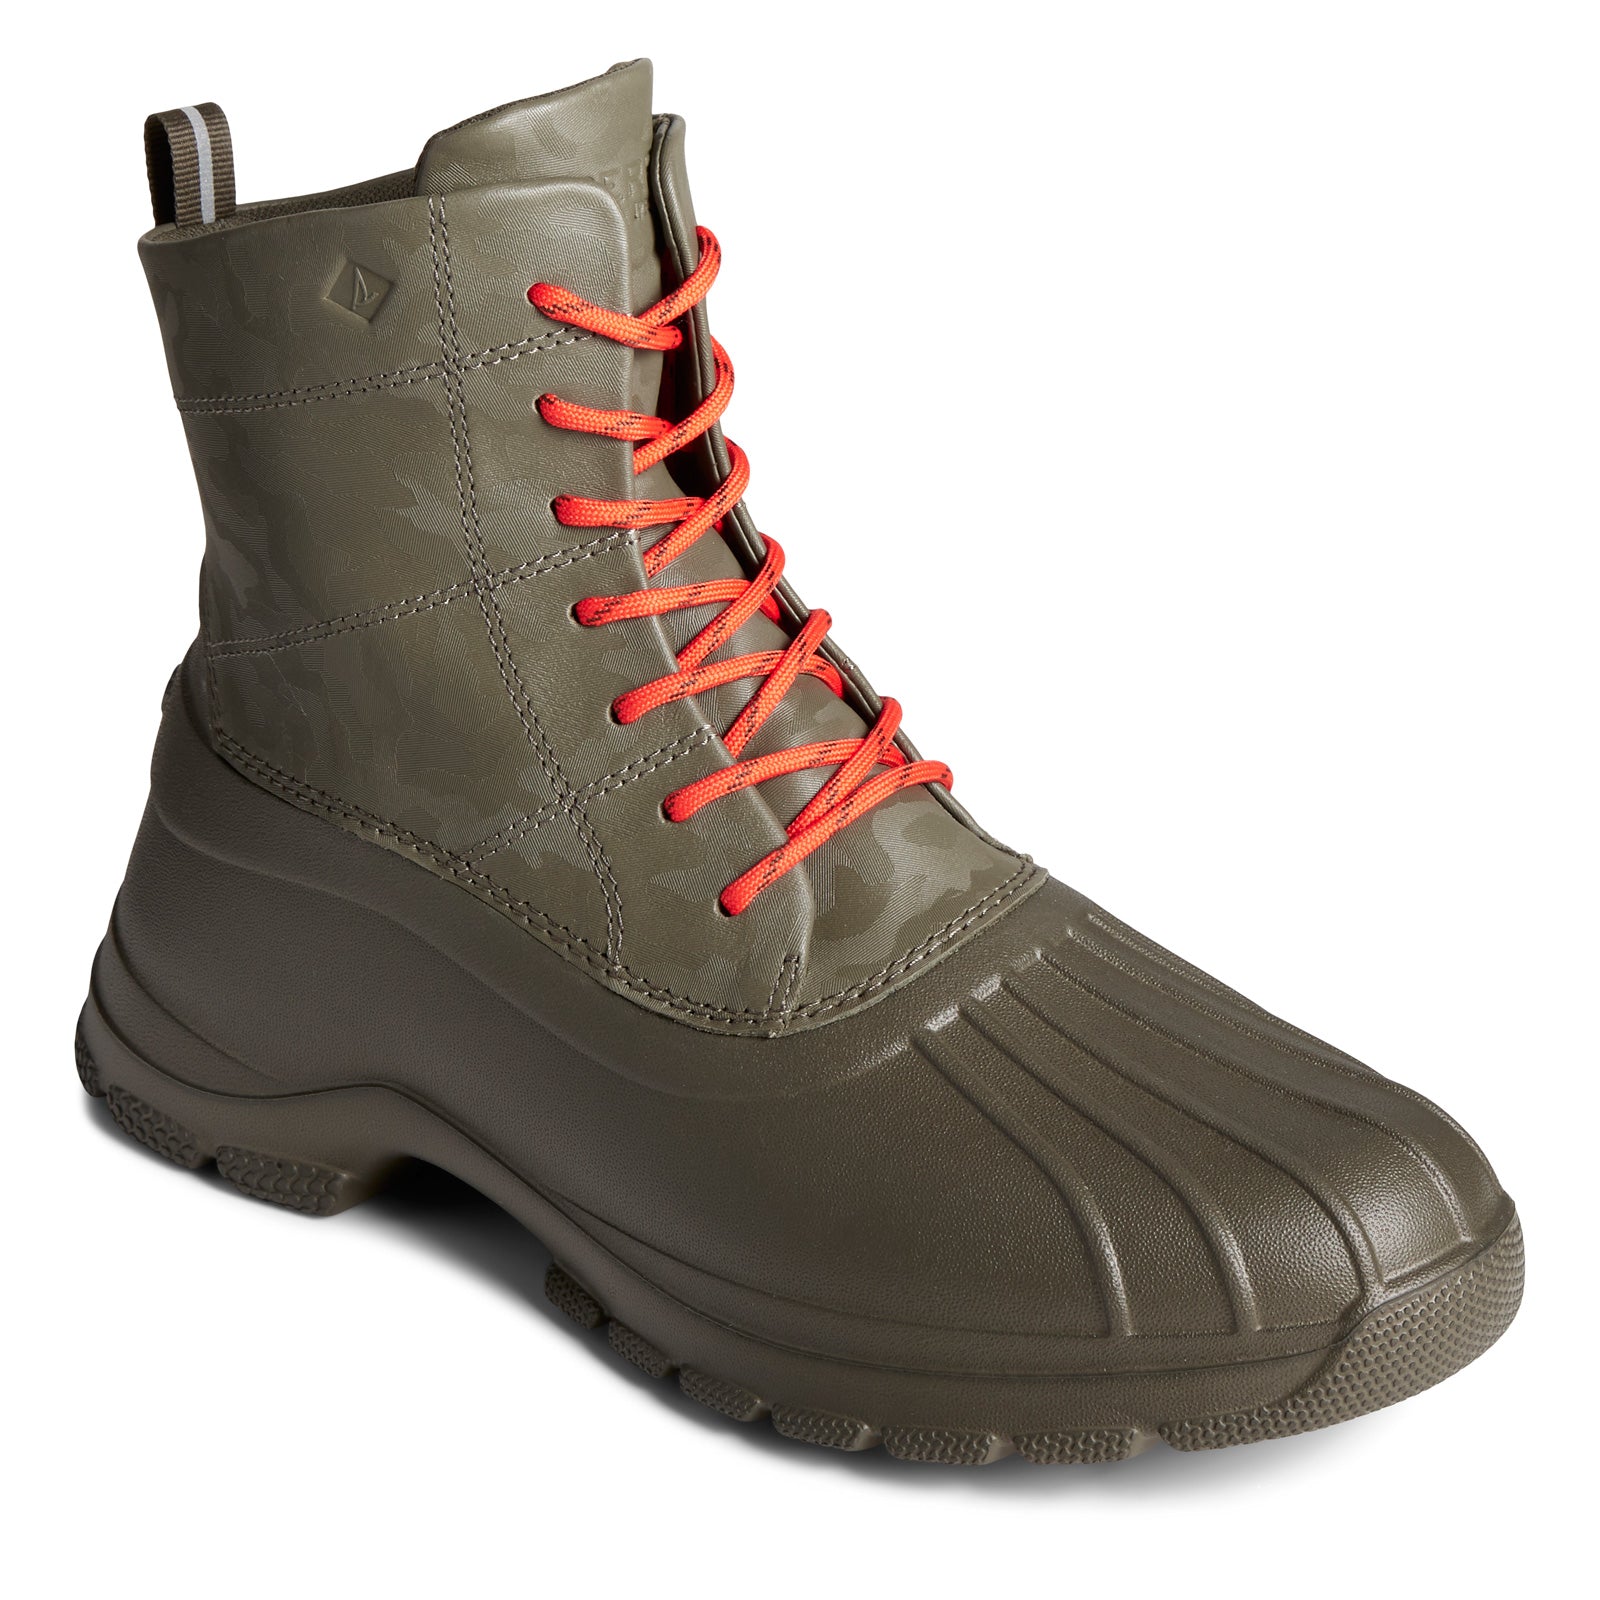 Sperry Rain Duck Boots on Sale | www.jkuat.ac.ke